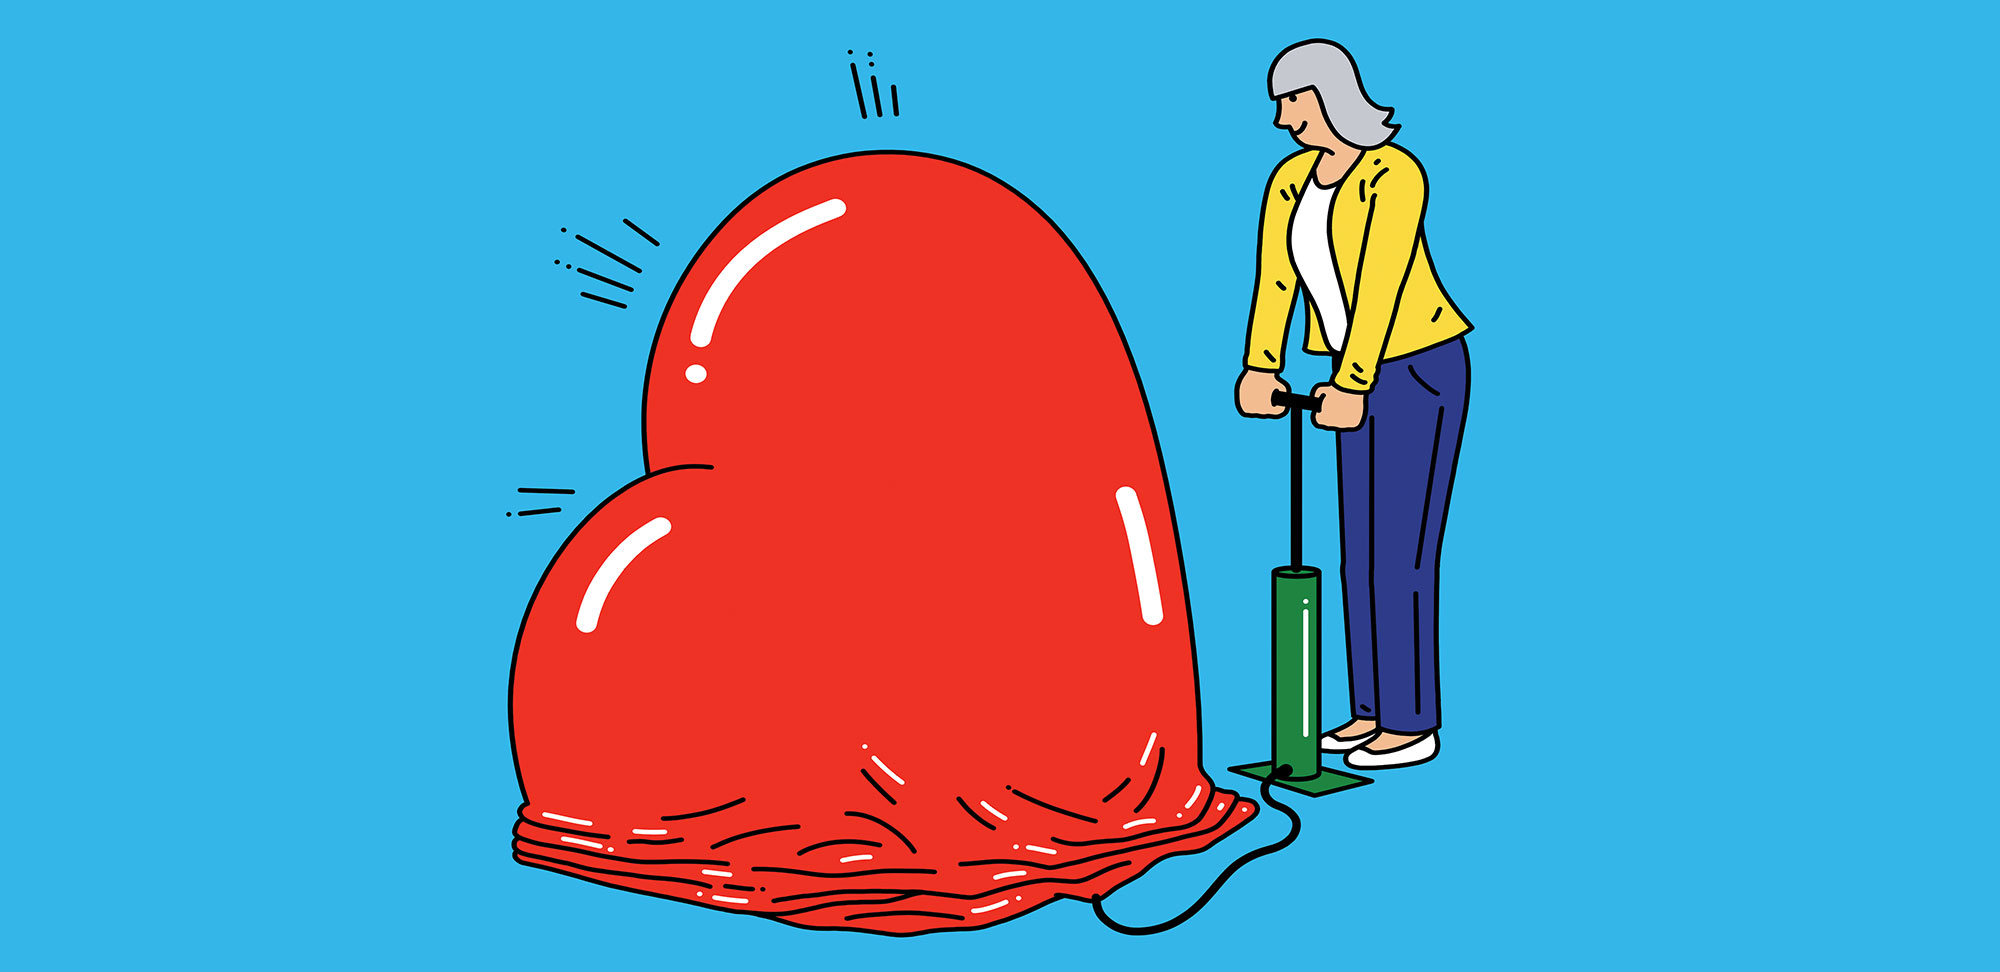 Illustration conceptuelle d’une personne gonflant un ballon en forme de cœur